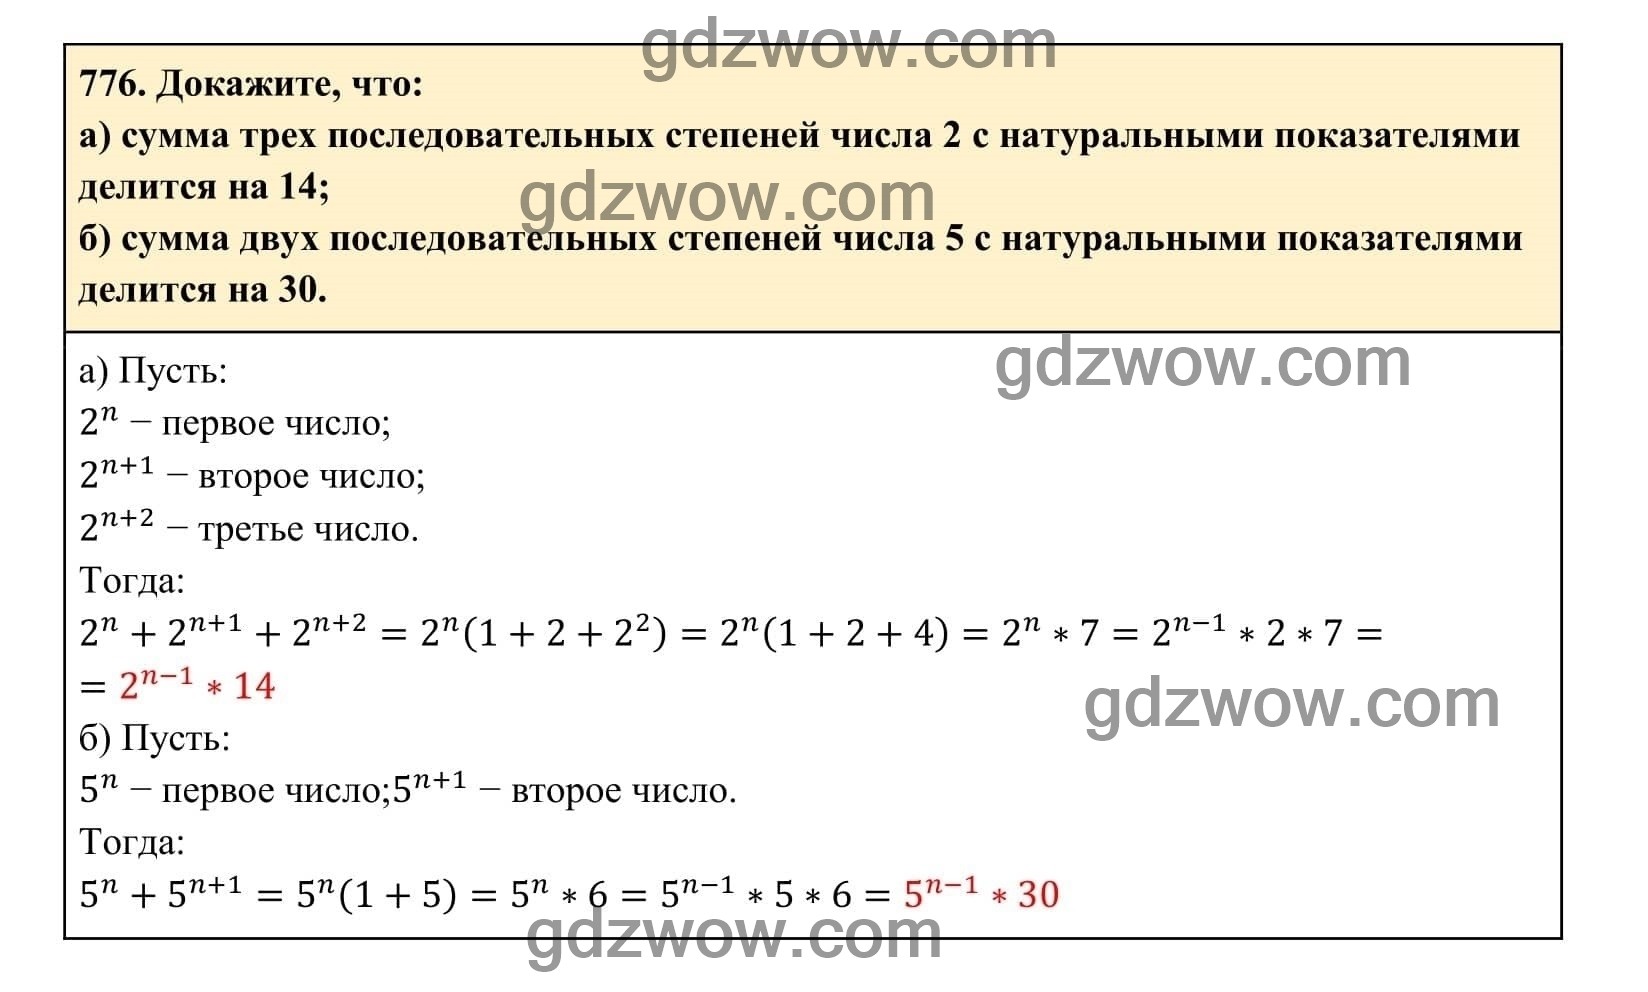 Упражнение 776 - ГДЗ по Алгебре 7 класс Учебник Макарычев (решебник) - GDZwow